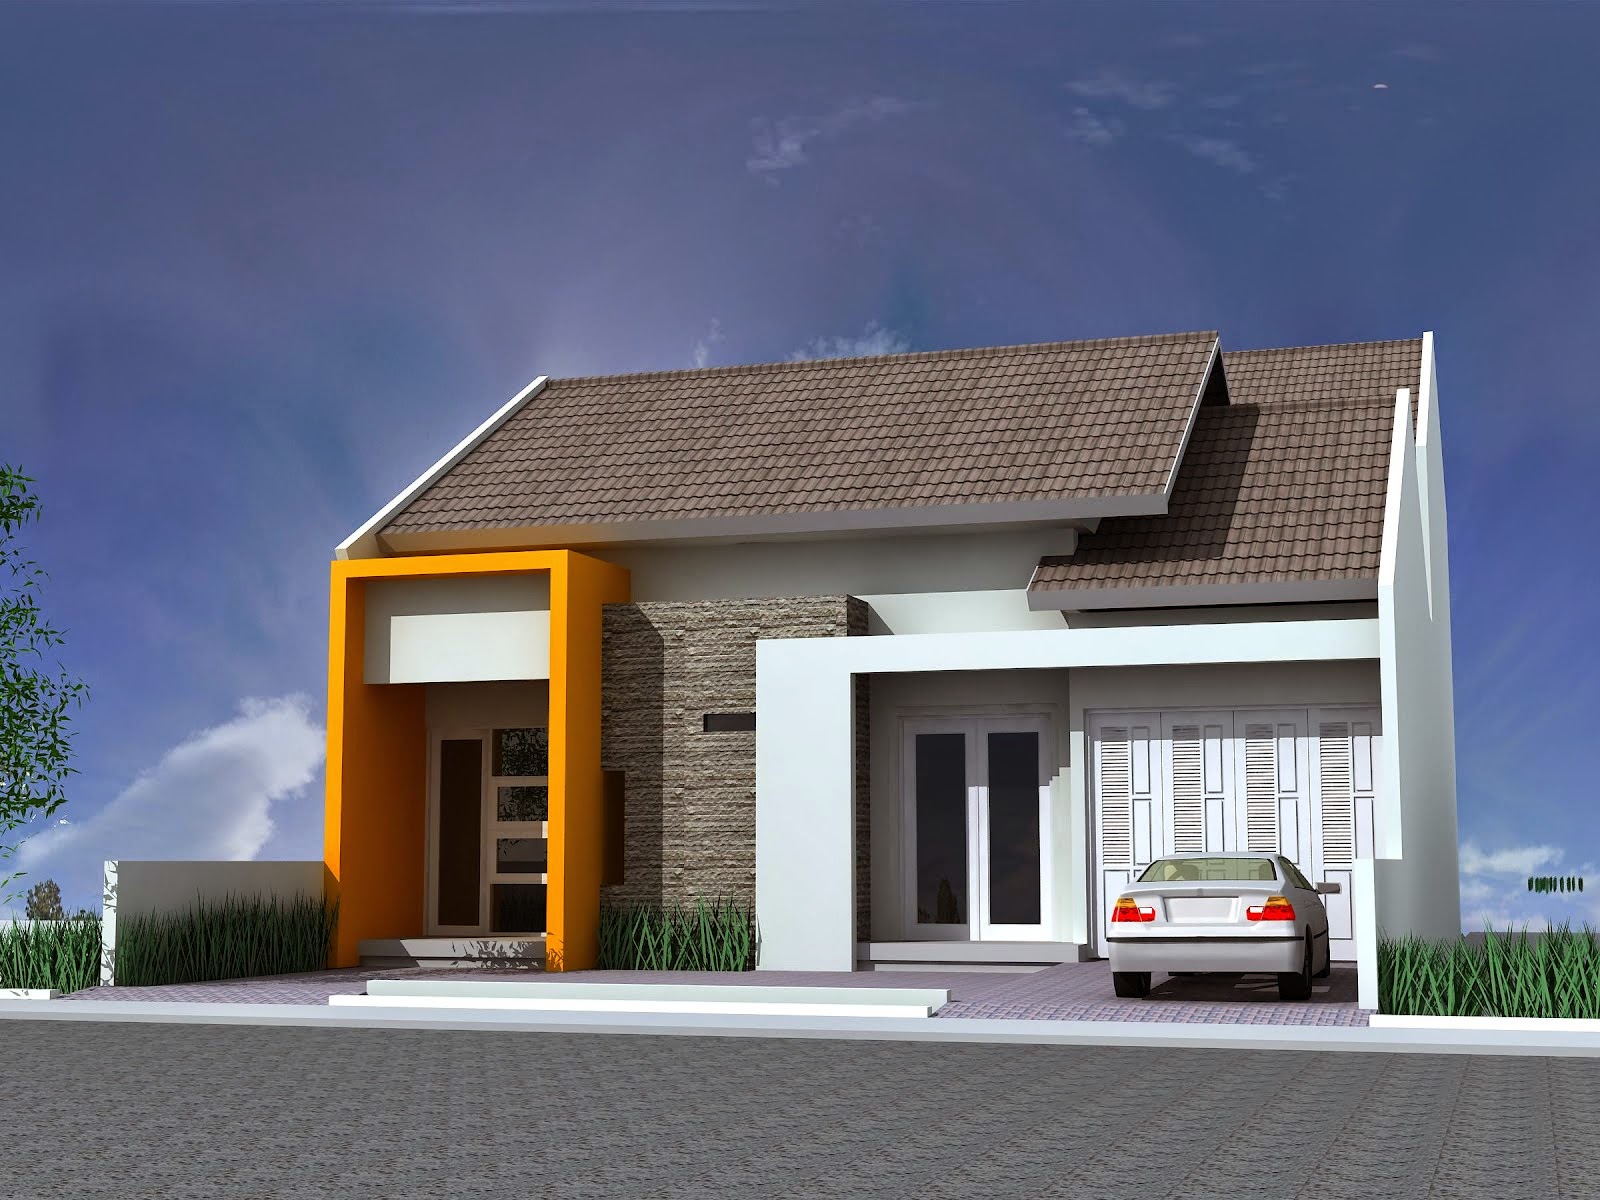 Desain Rumah Minimalis 1 Lantai Terbaru Gambar Foto Desain Rumah